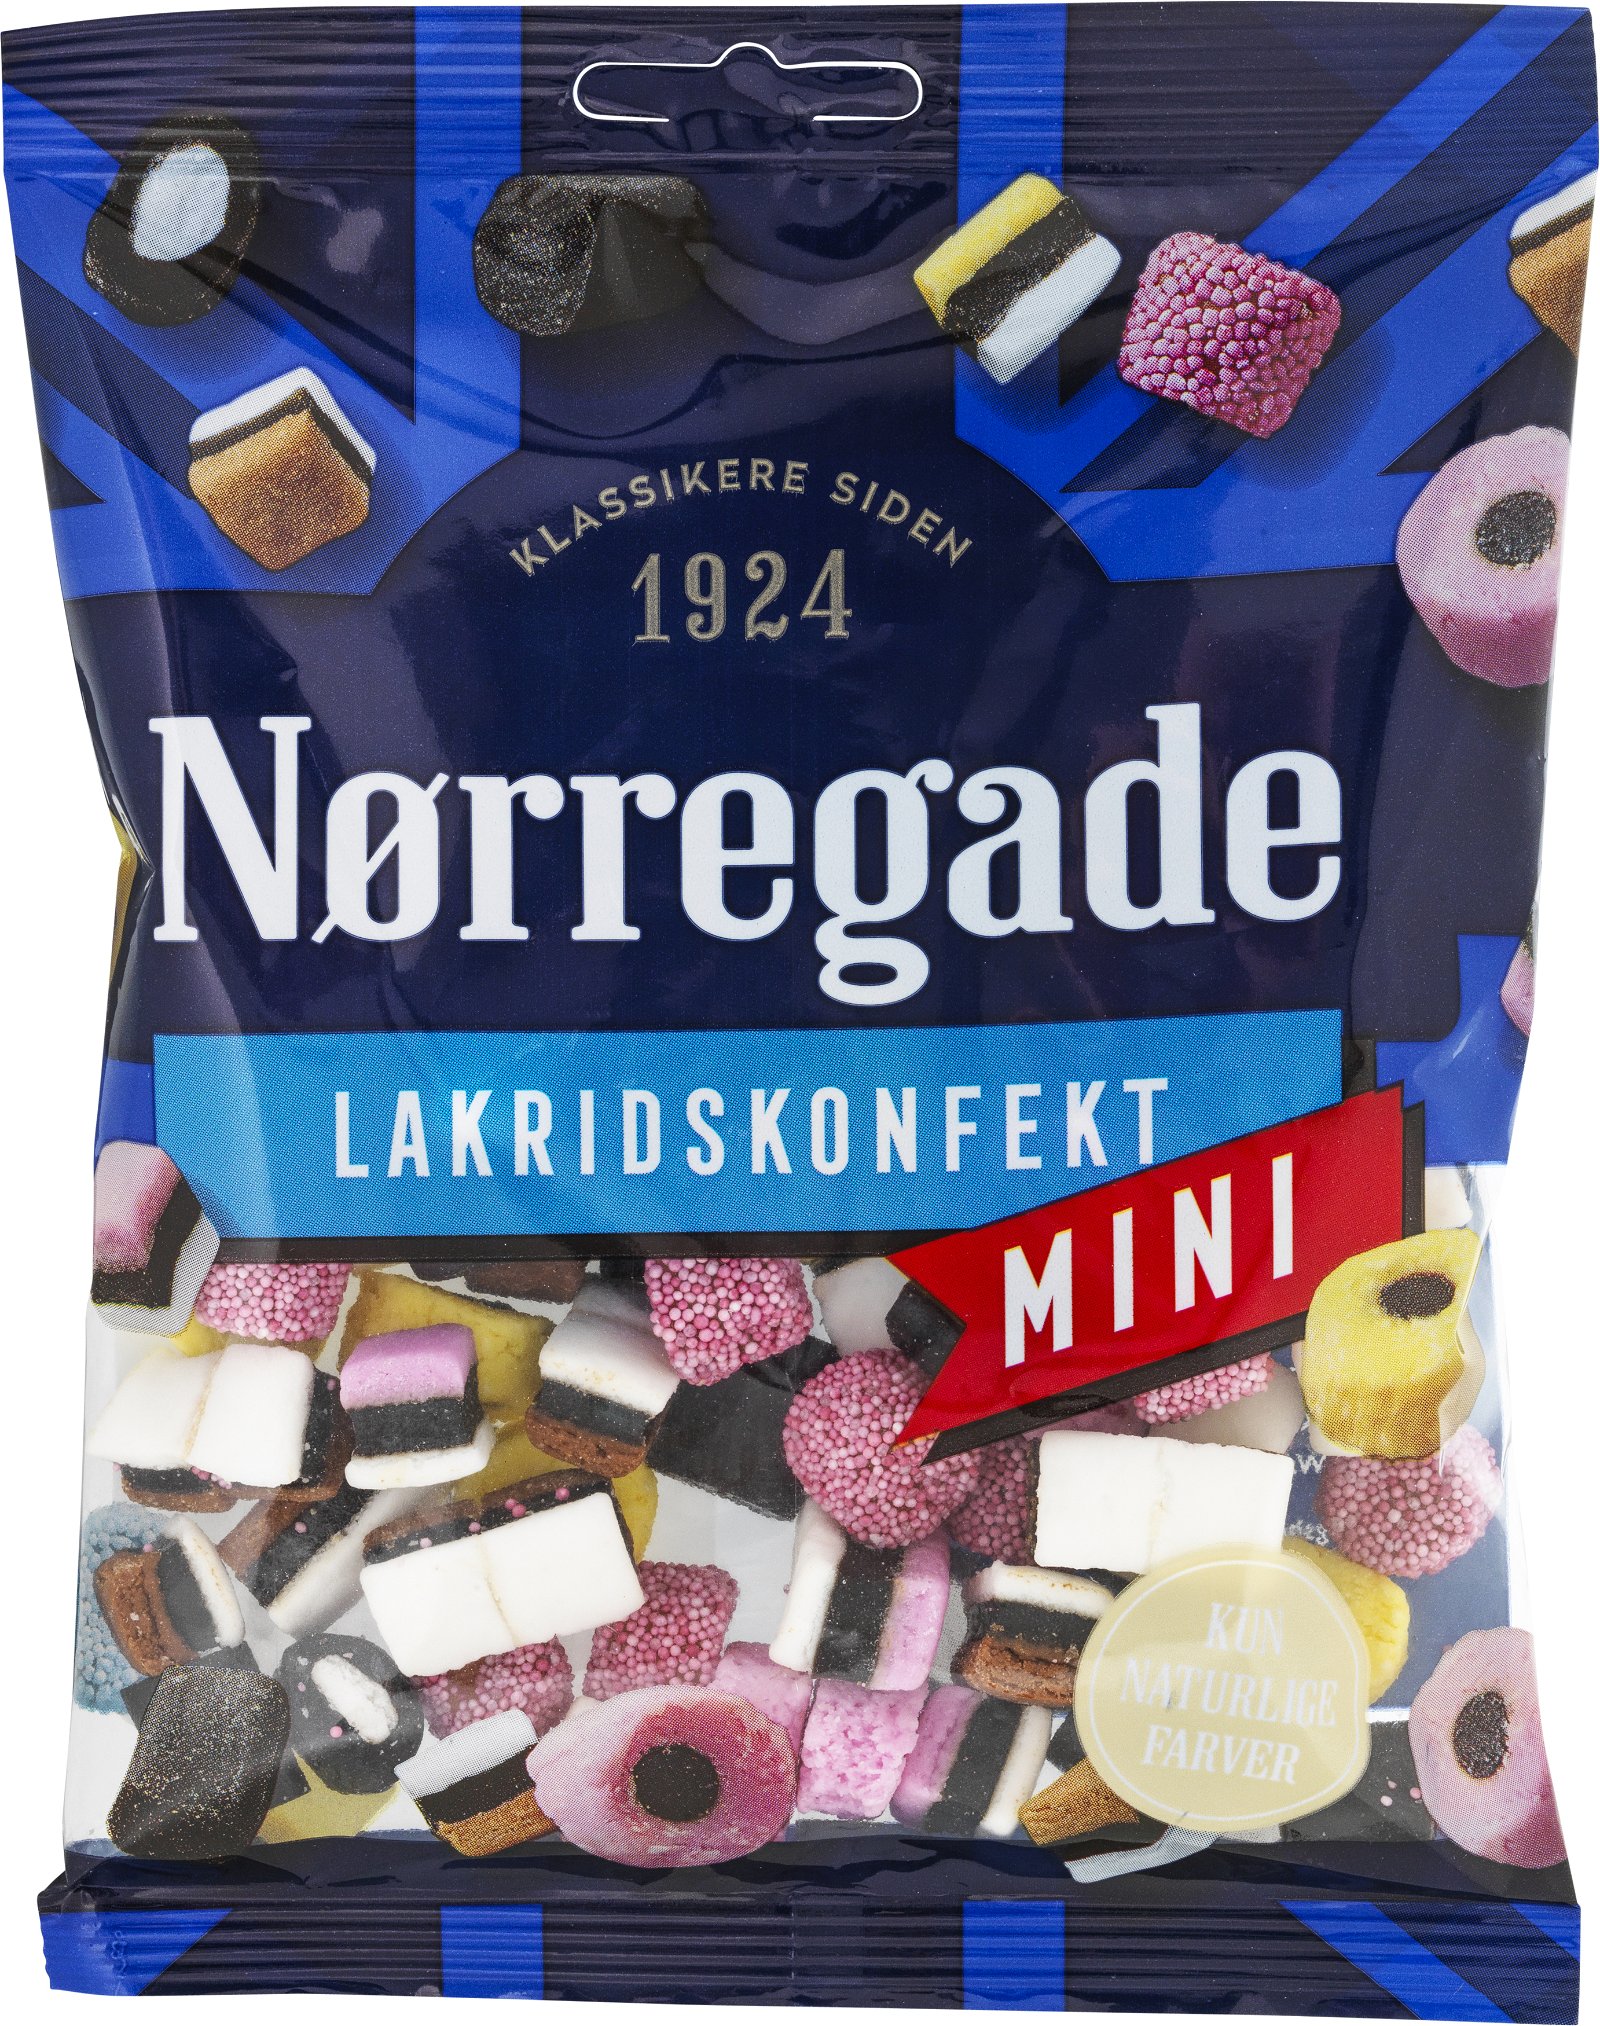 Nørregade Lakridskonfekt 170g